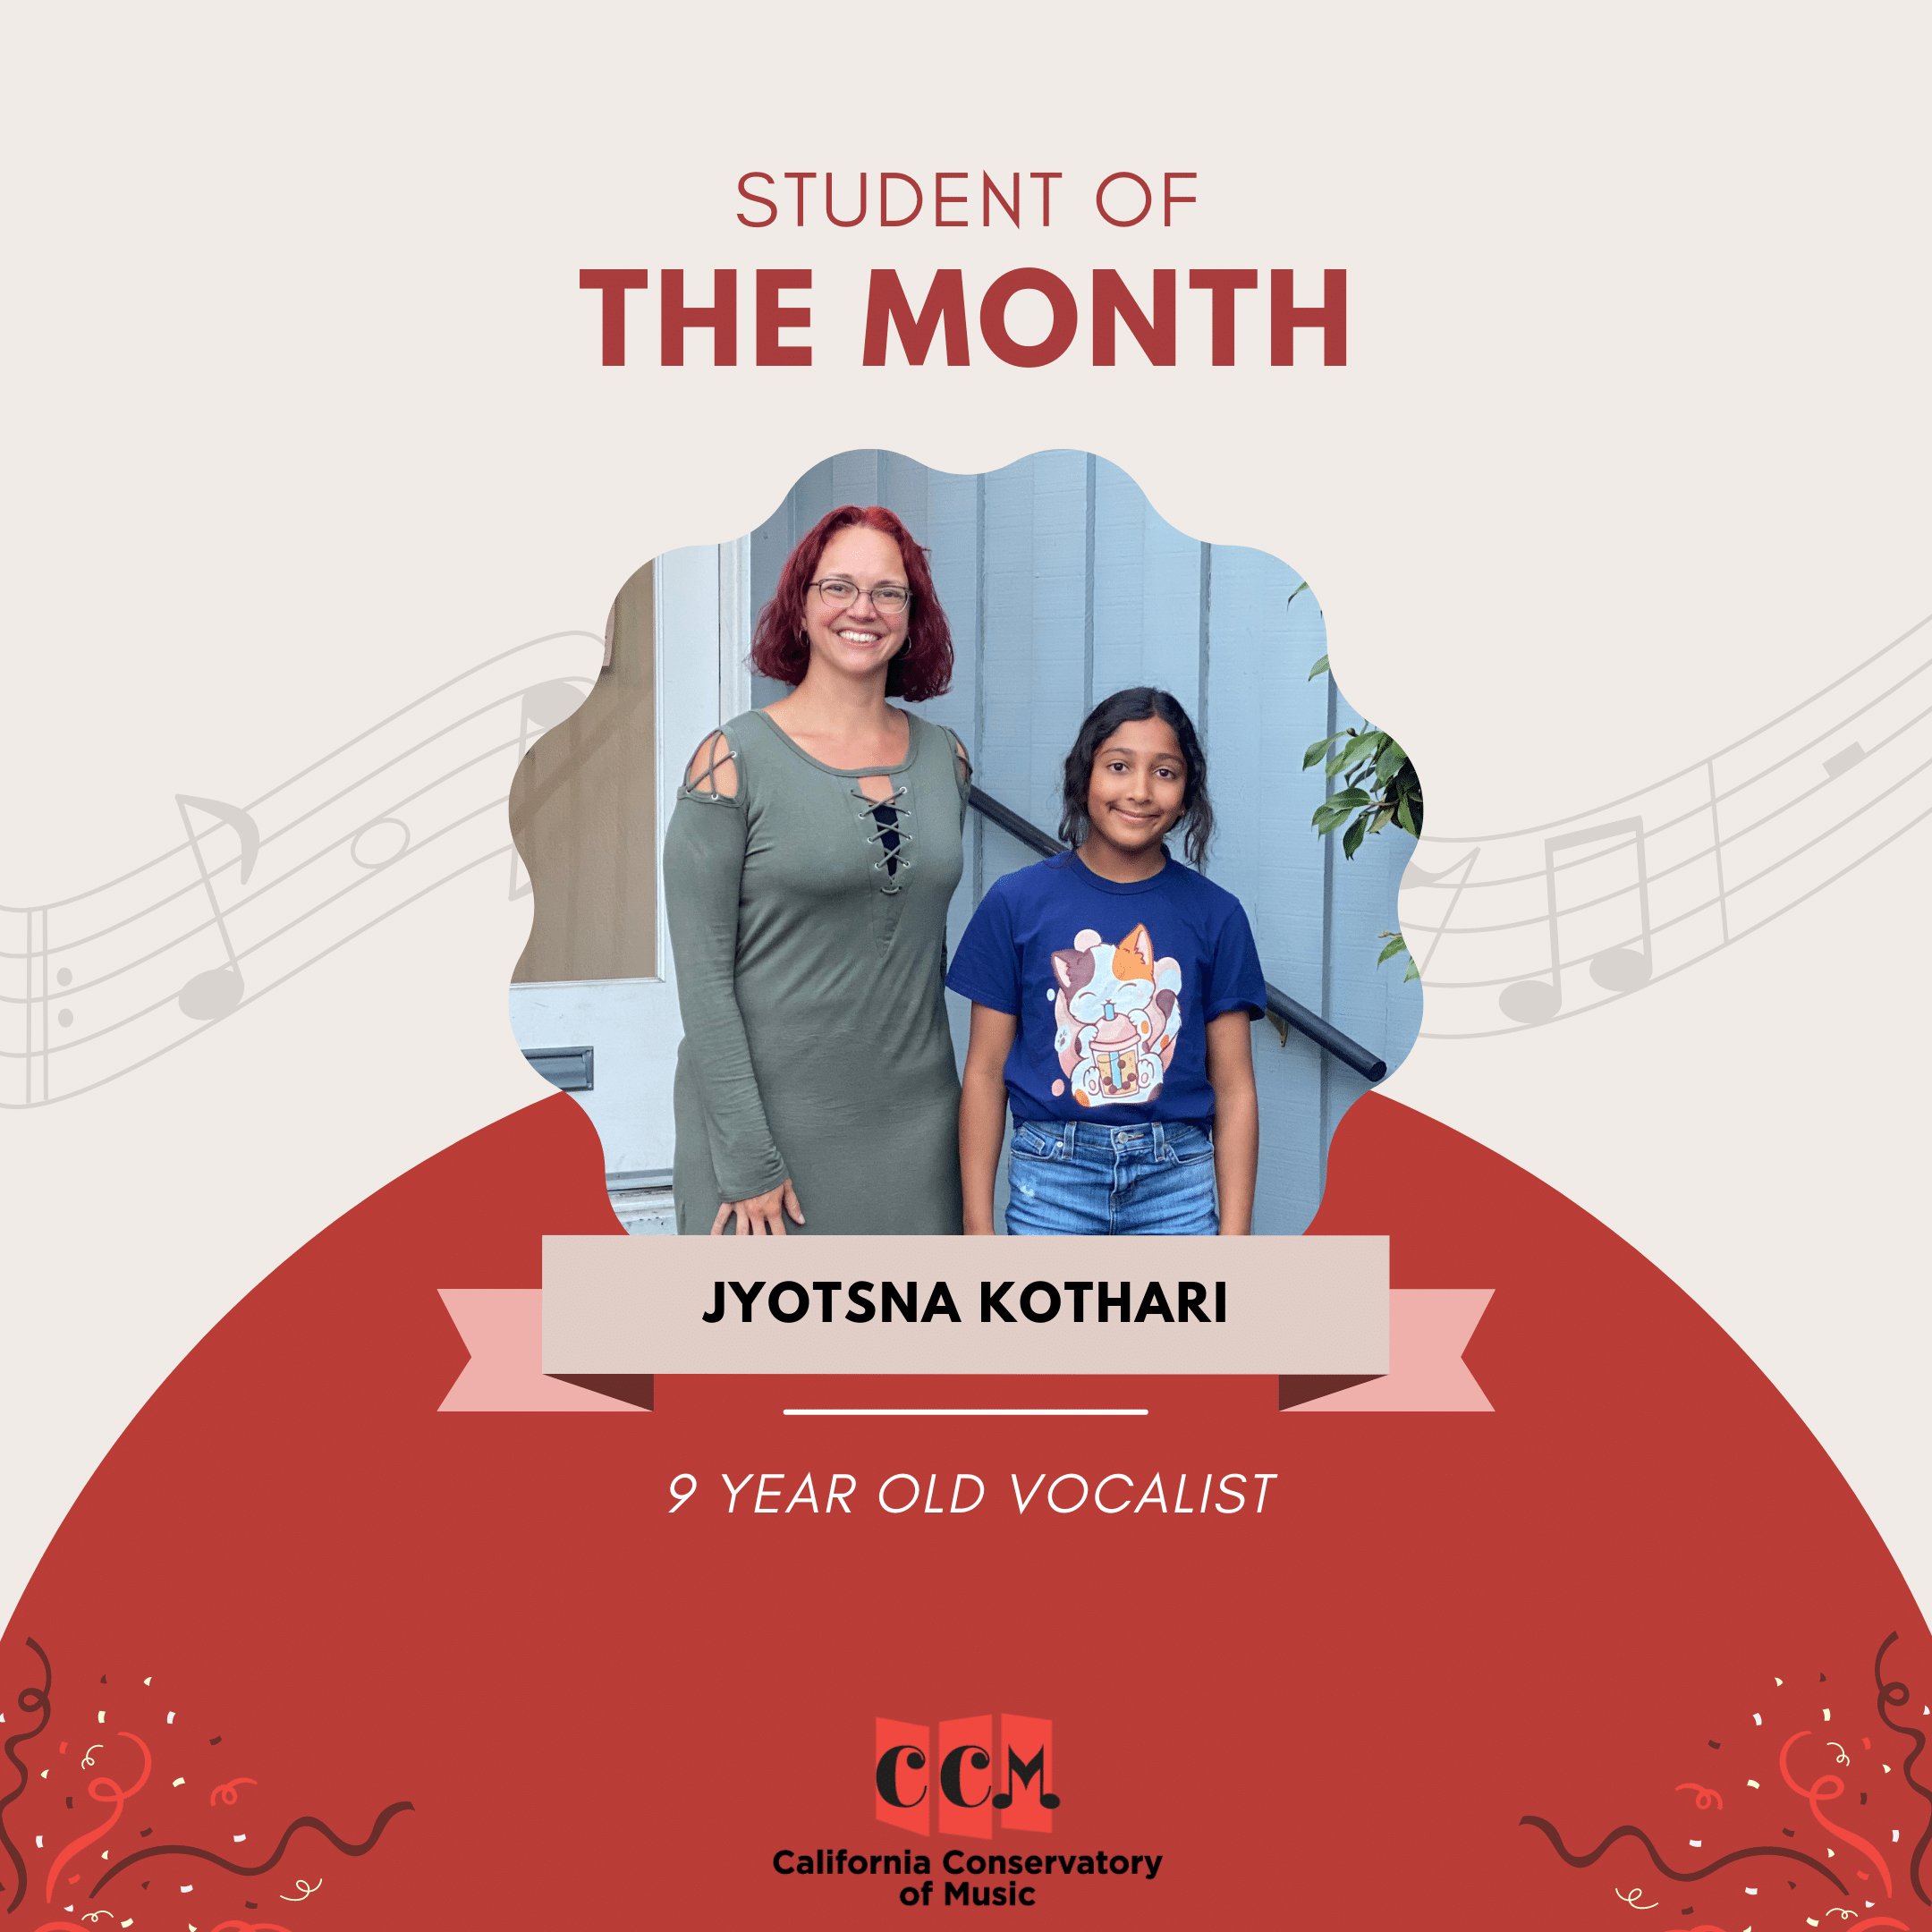 Jyotsna Kothari, the September Student of the Month